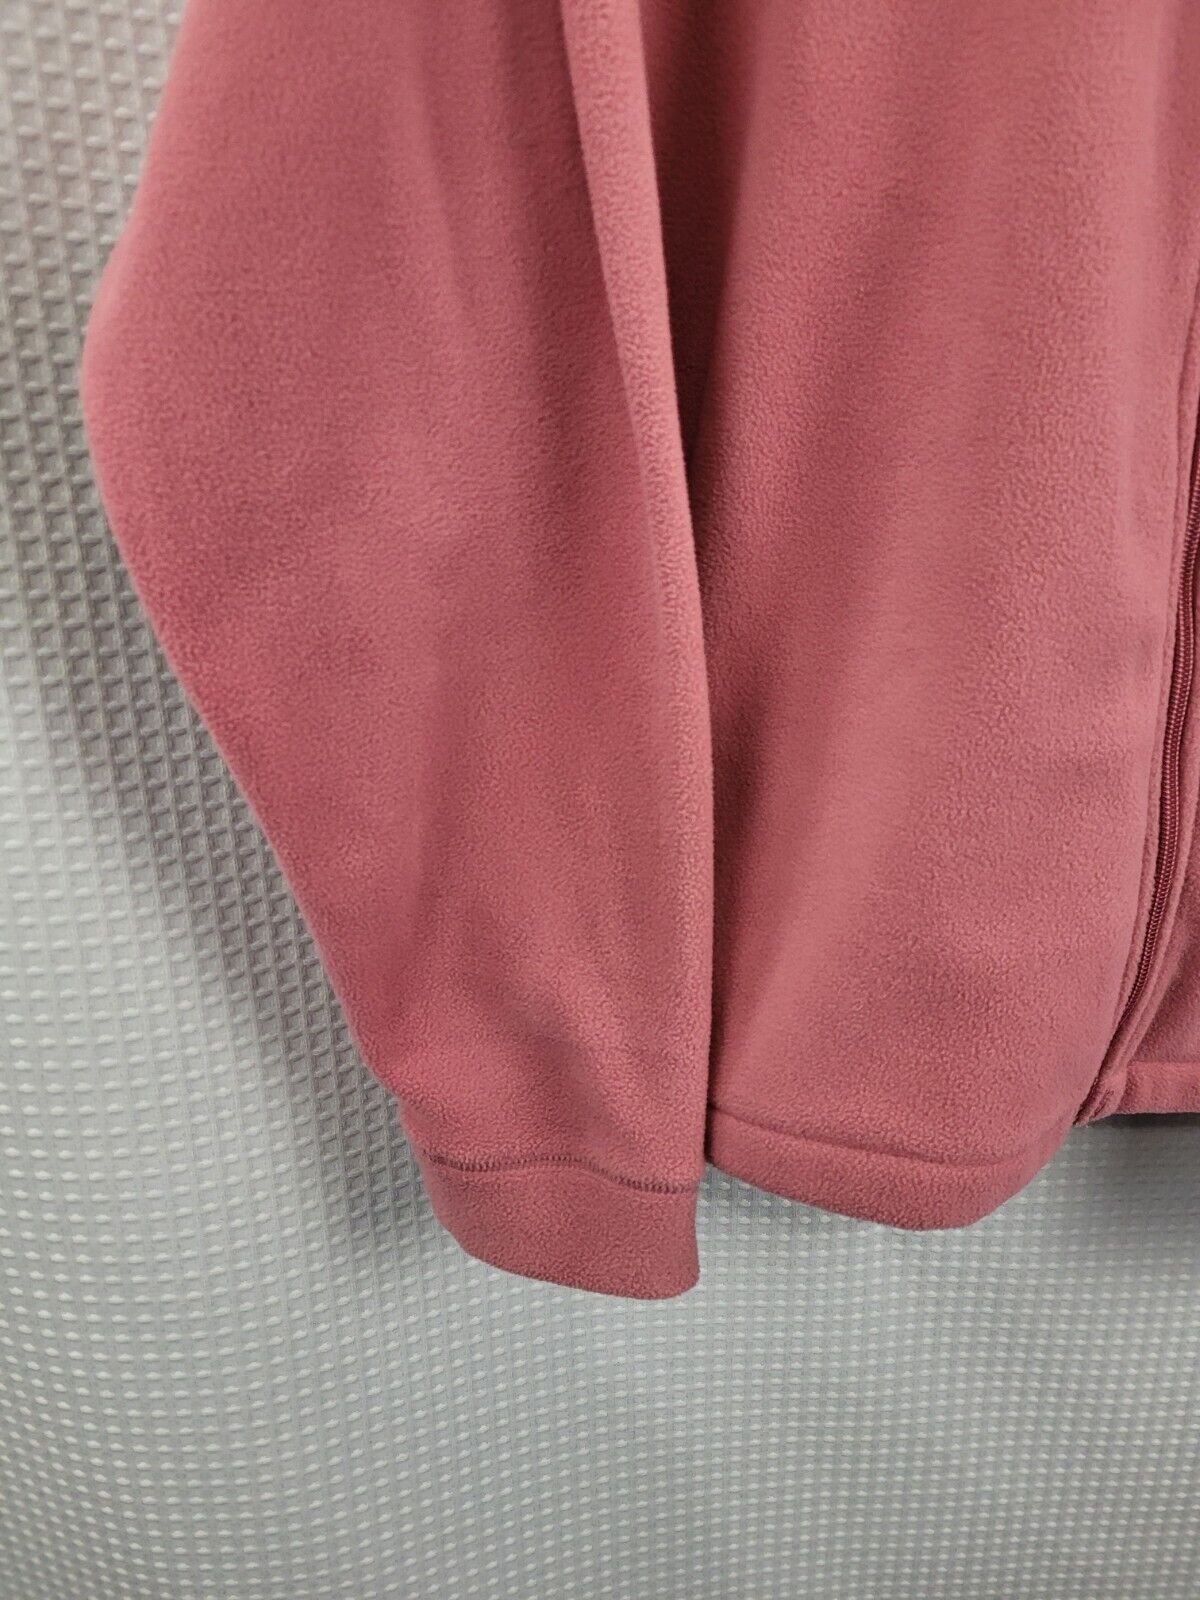 Woolrich Full Zip Pink Fleece Full Zip Womans Jac… - image 3